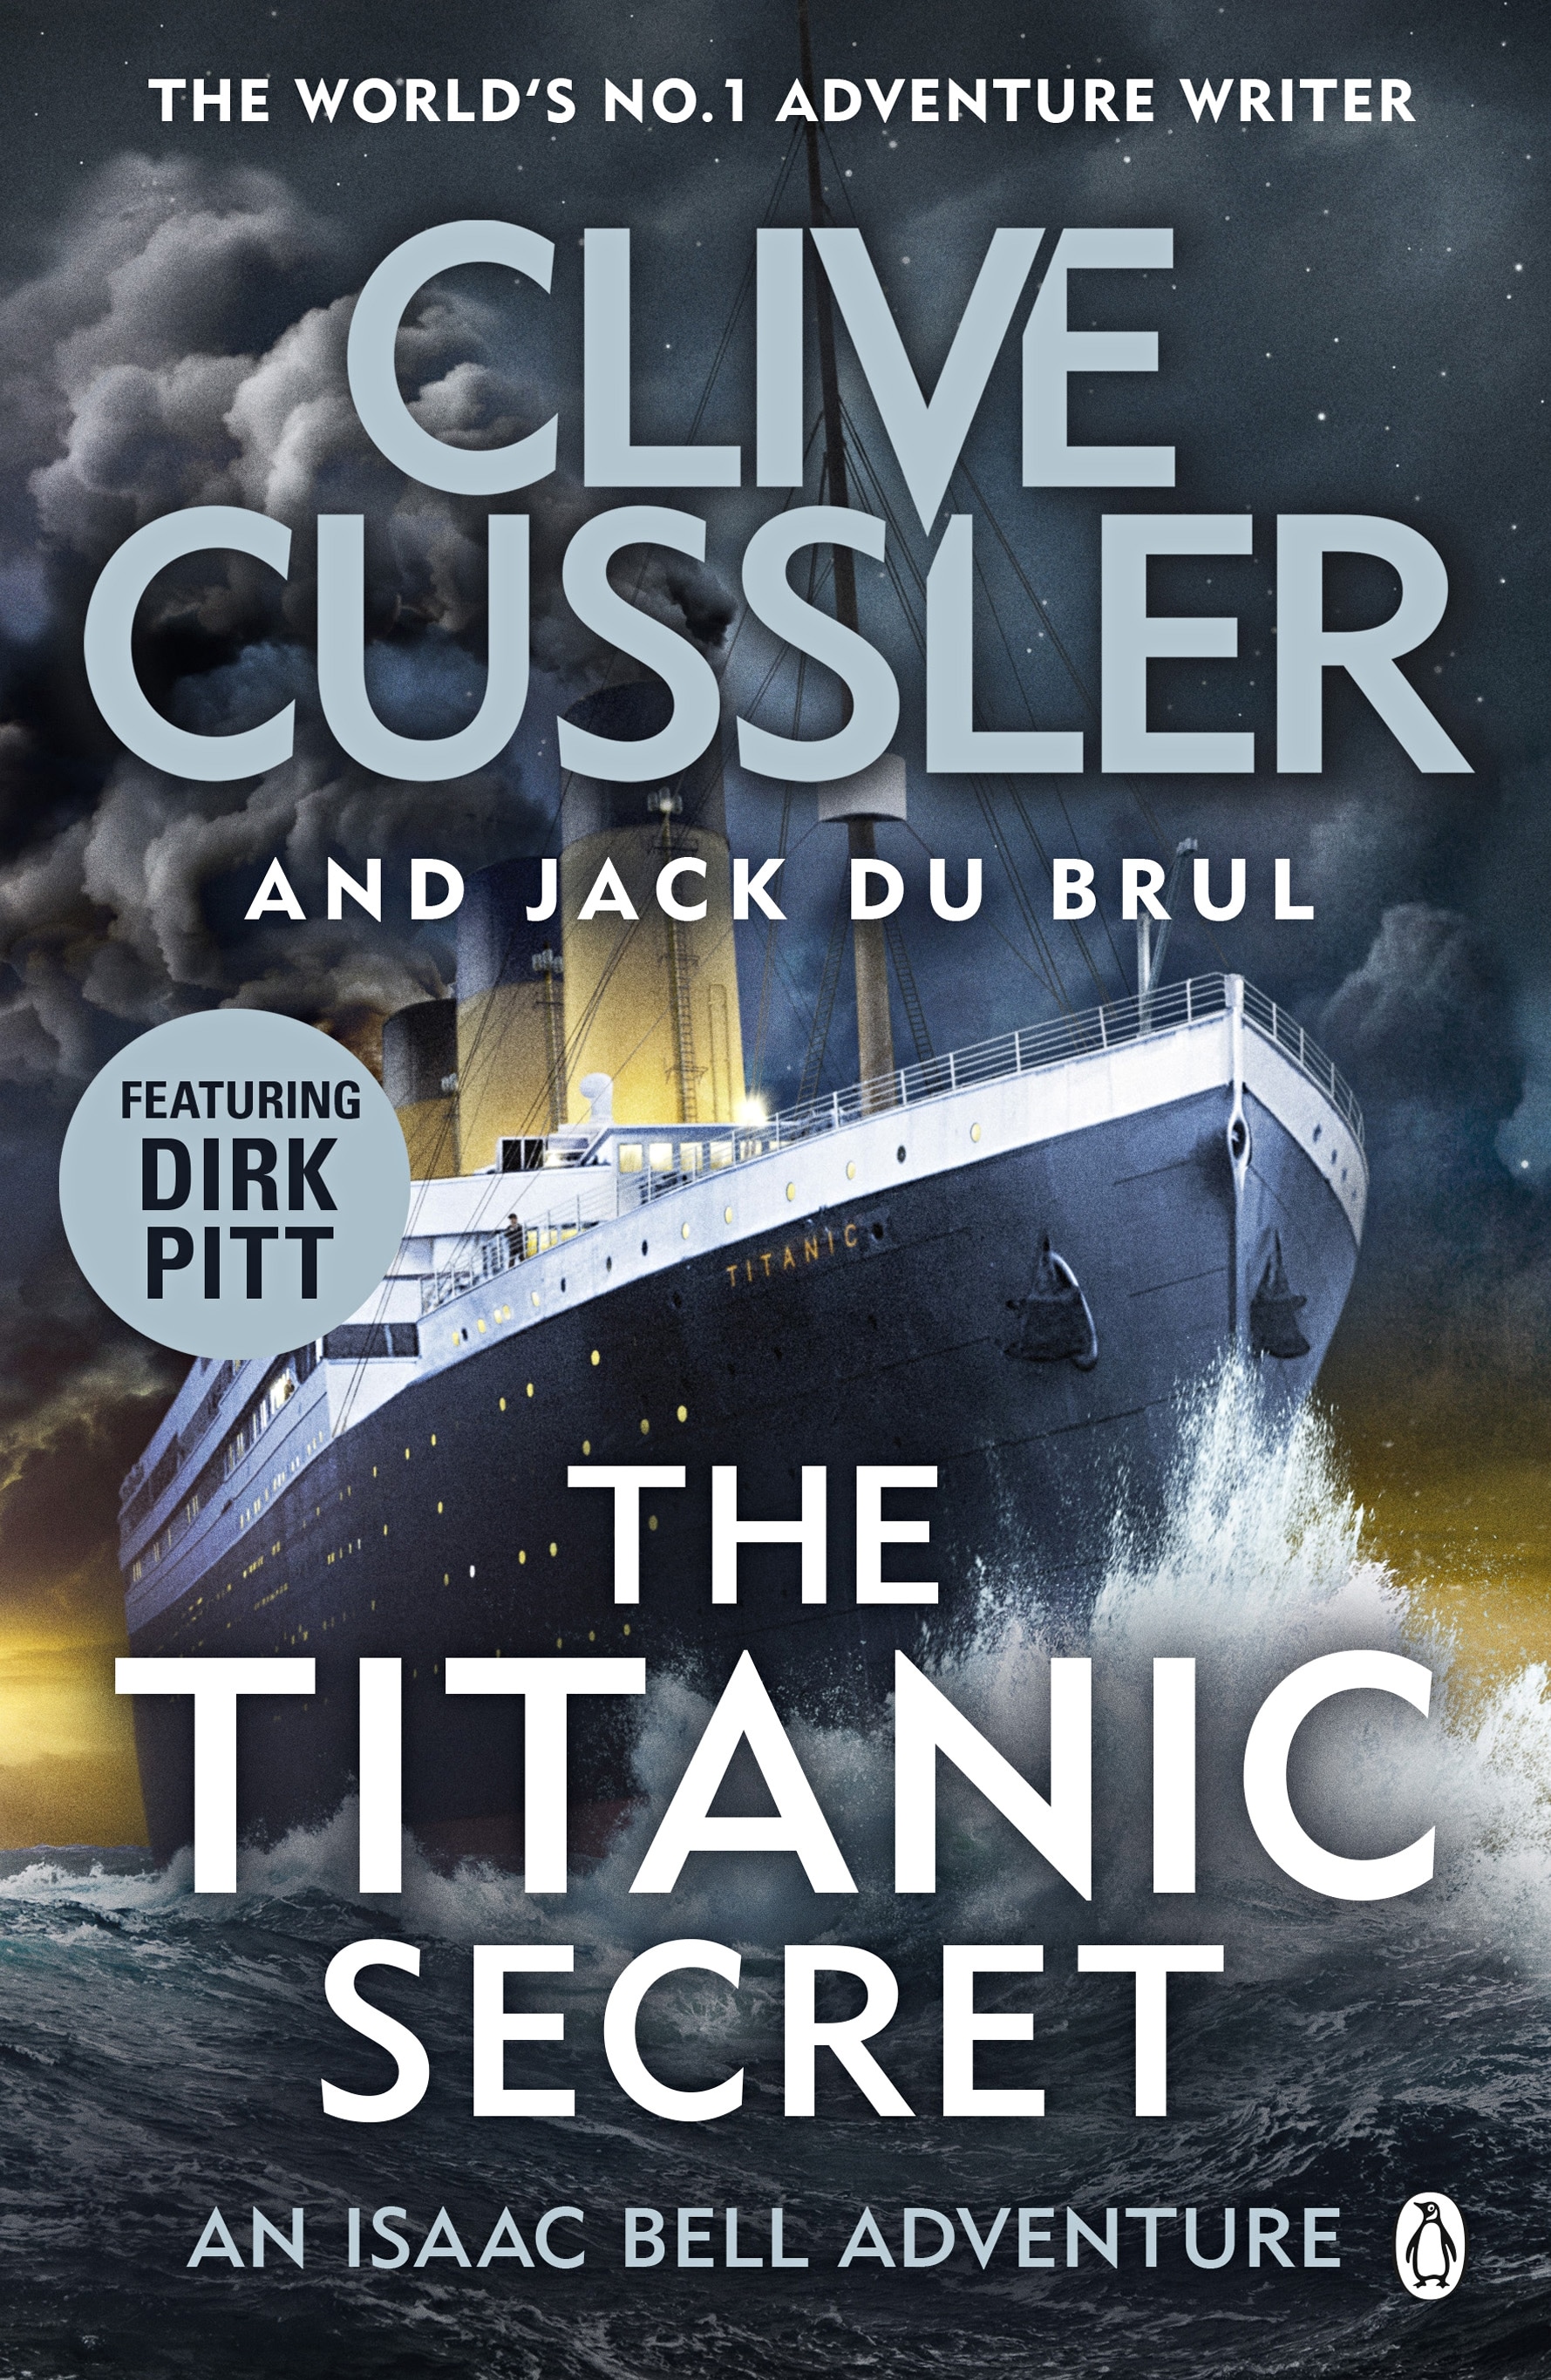 Book “The Titanic Secret” by Clive Cussler, Jack du Brul — September 3, 2020